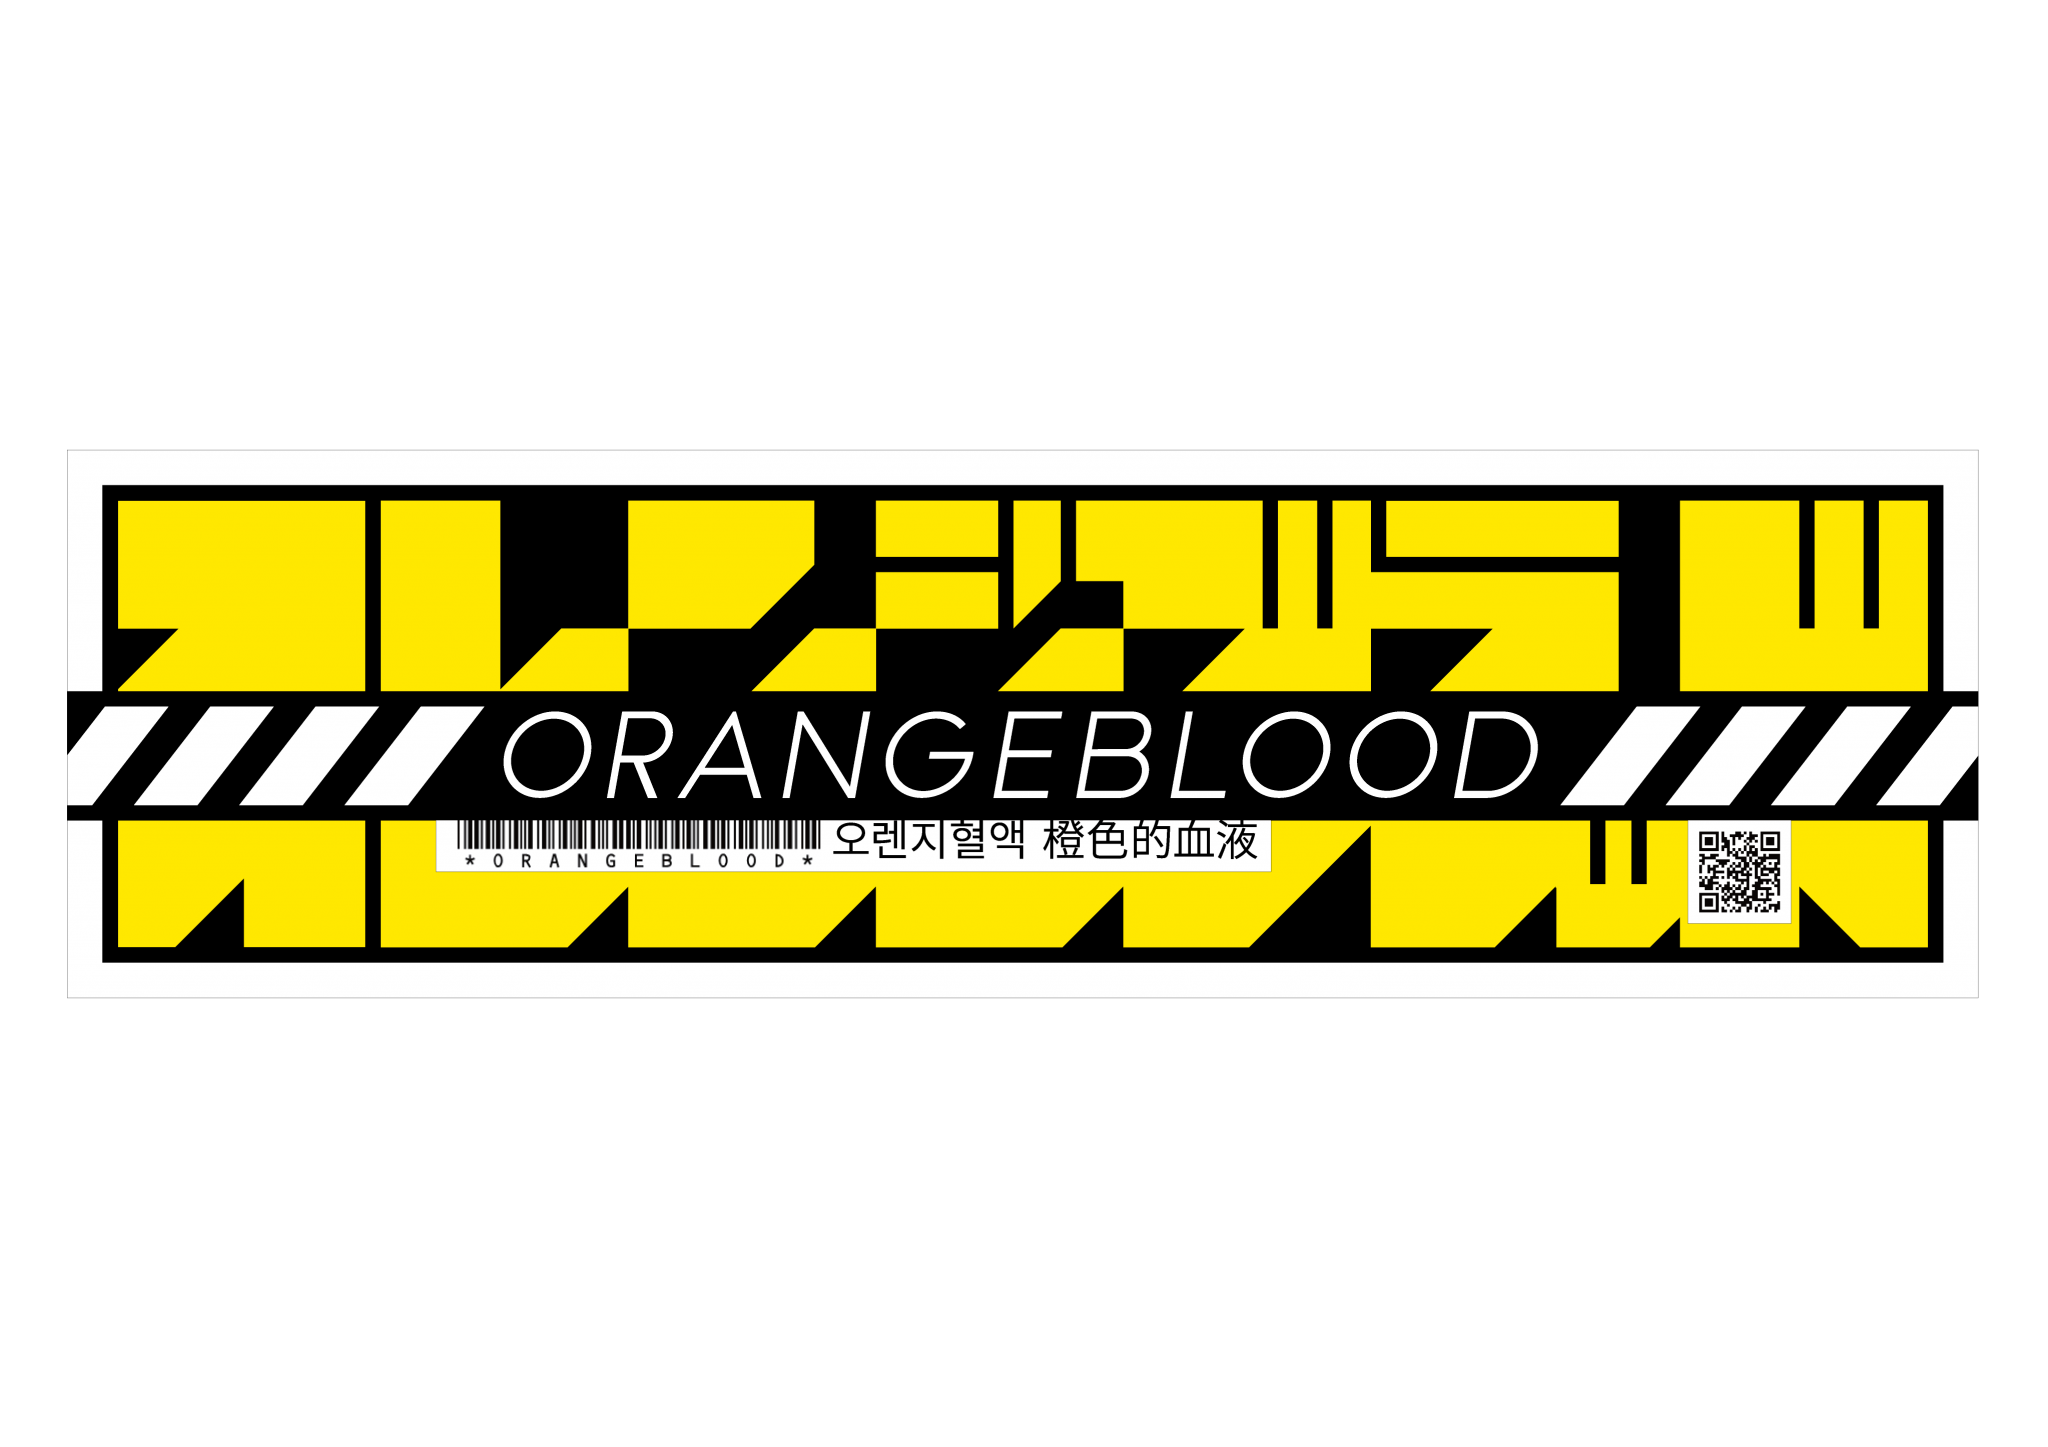 orangeblood recensione